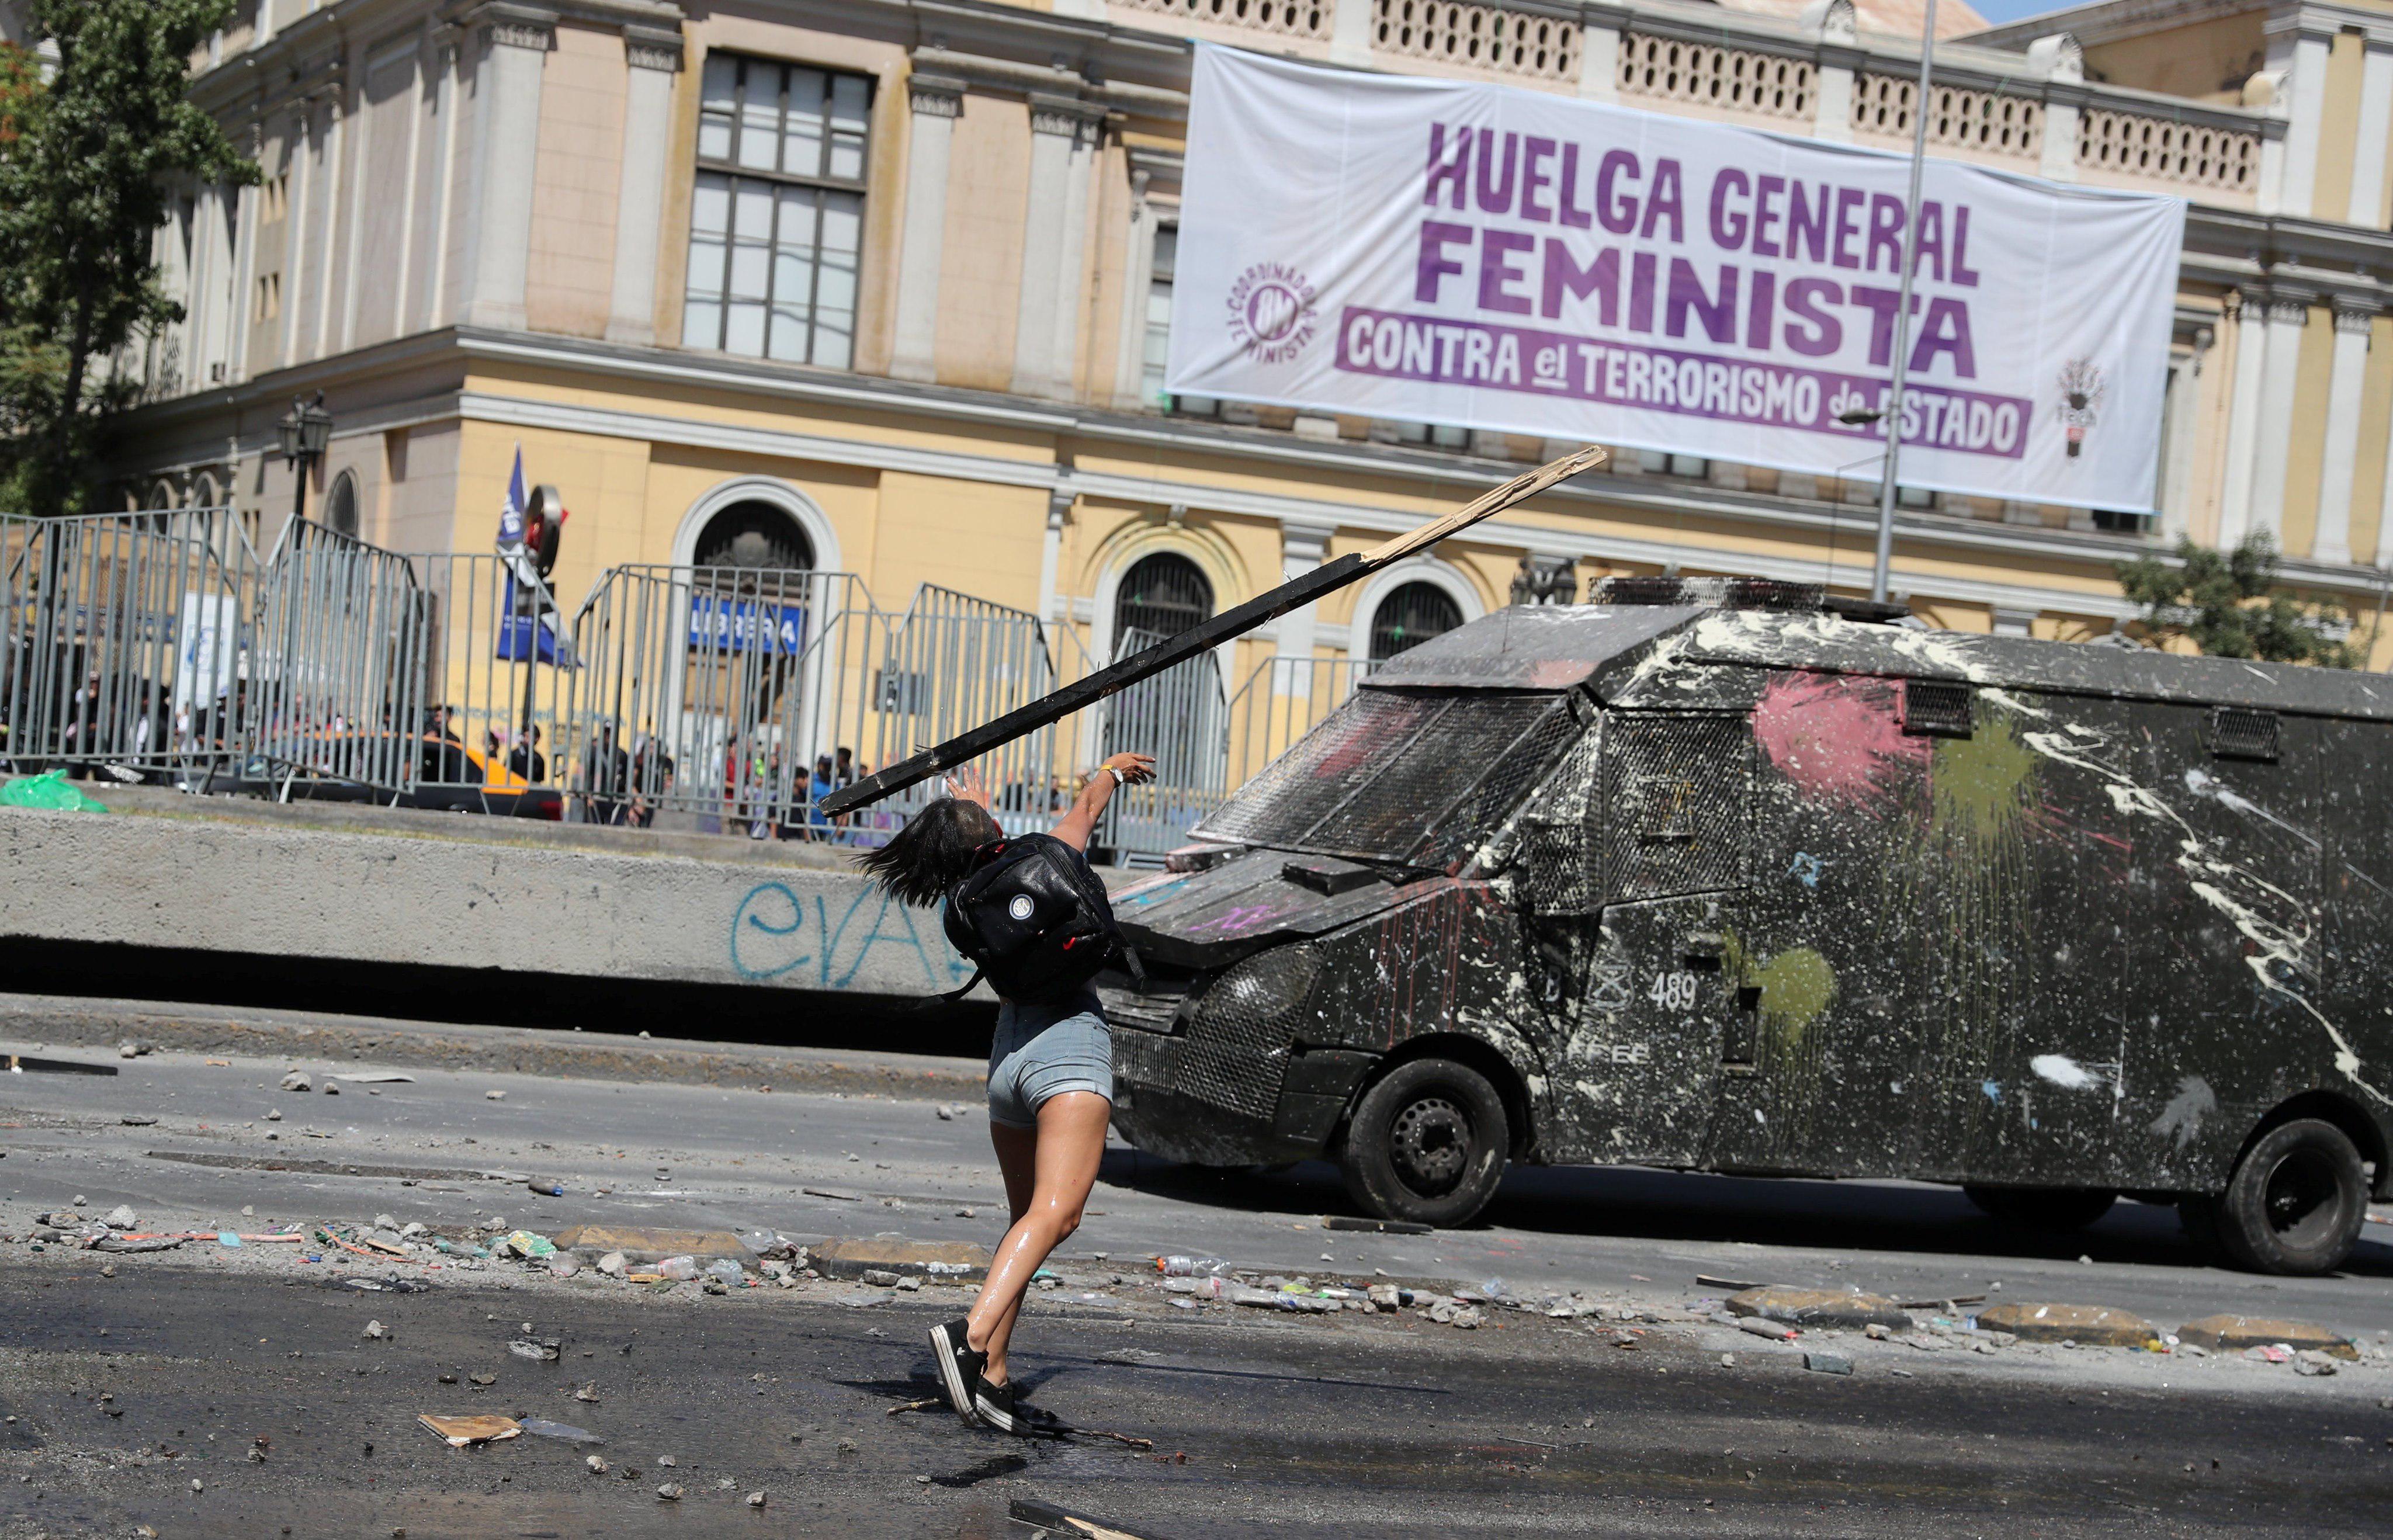 El movimiento feminista volvió a tomar las calles por segunda vez en 24 horas bajo un sol sofocante, que no impidió que una marea de mujeres empuñara sus carteles con consignas feministas. (Reuters)